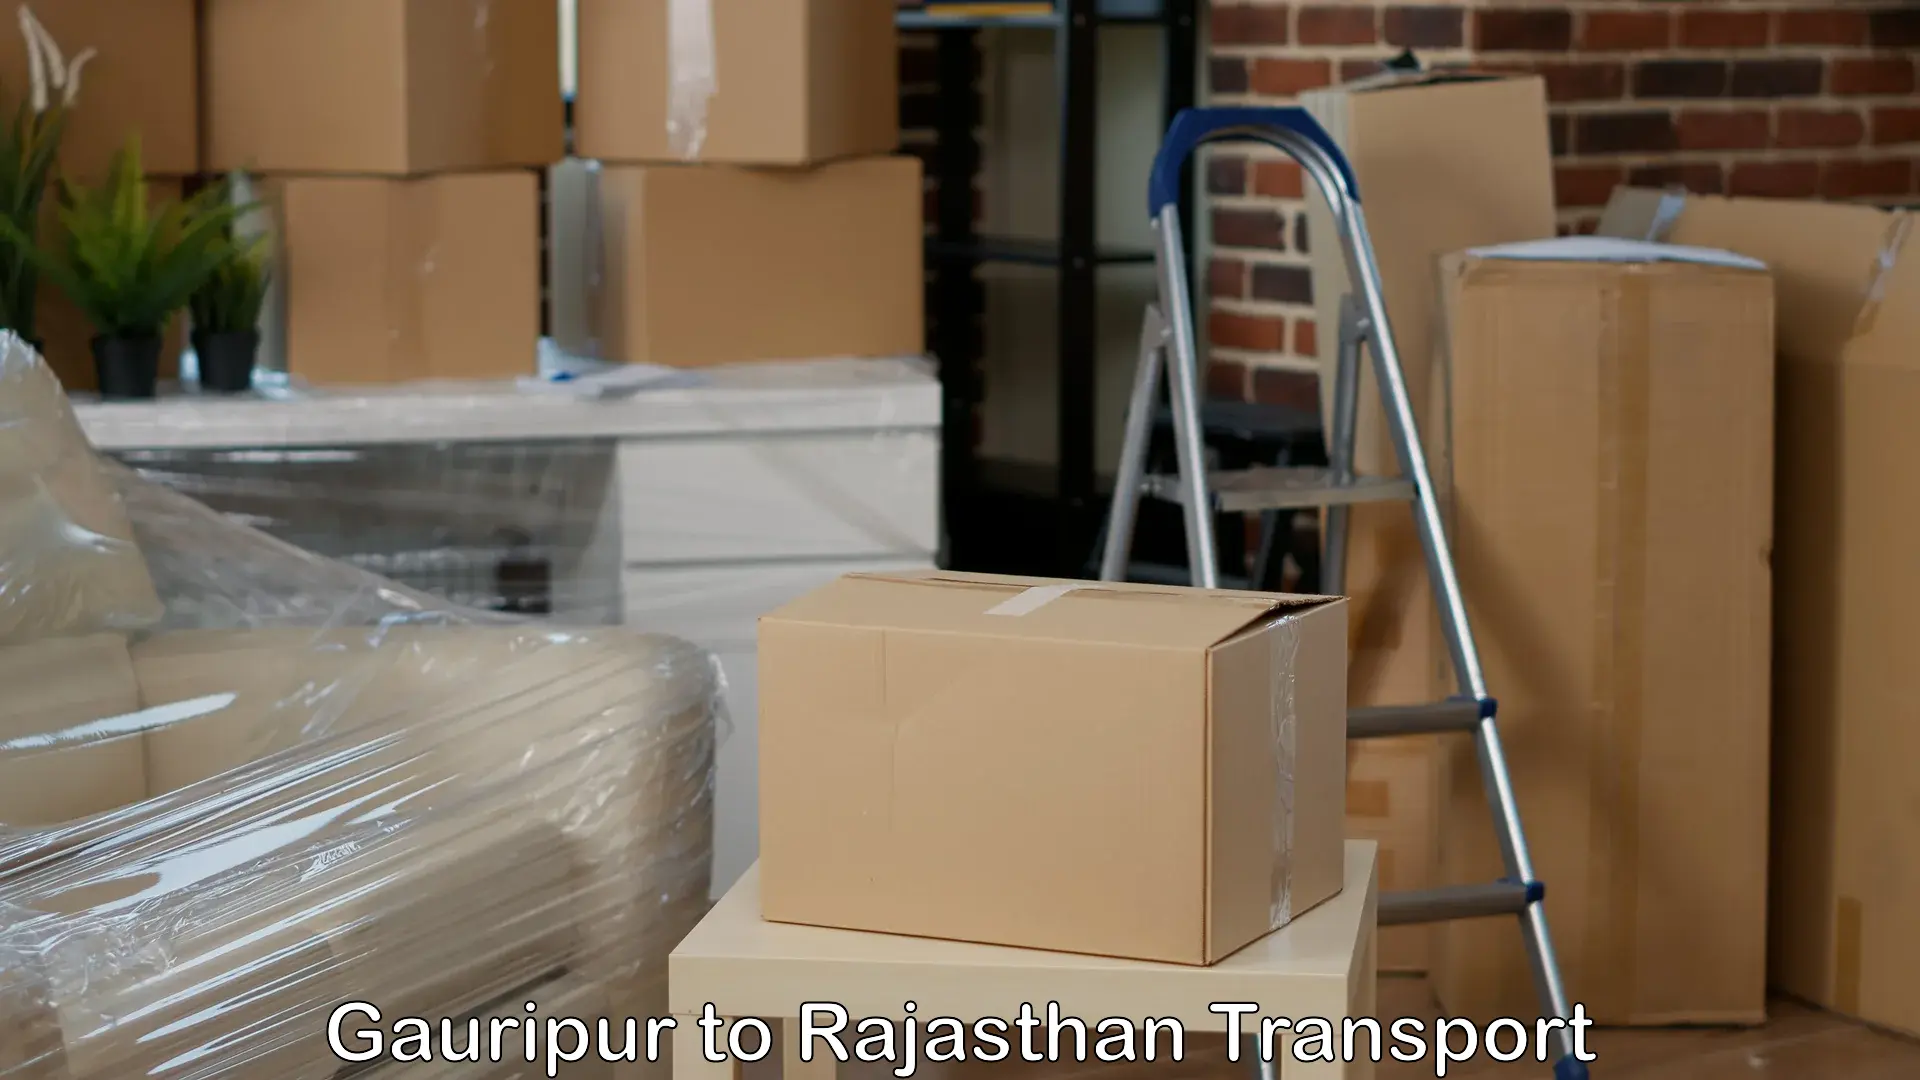 Online transport service Gauripur to Sumerpur